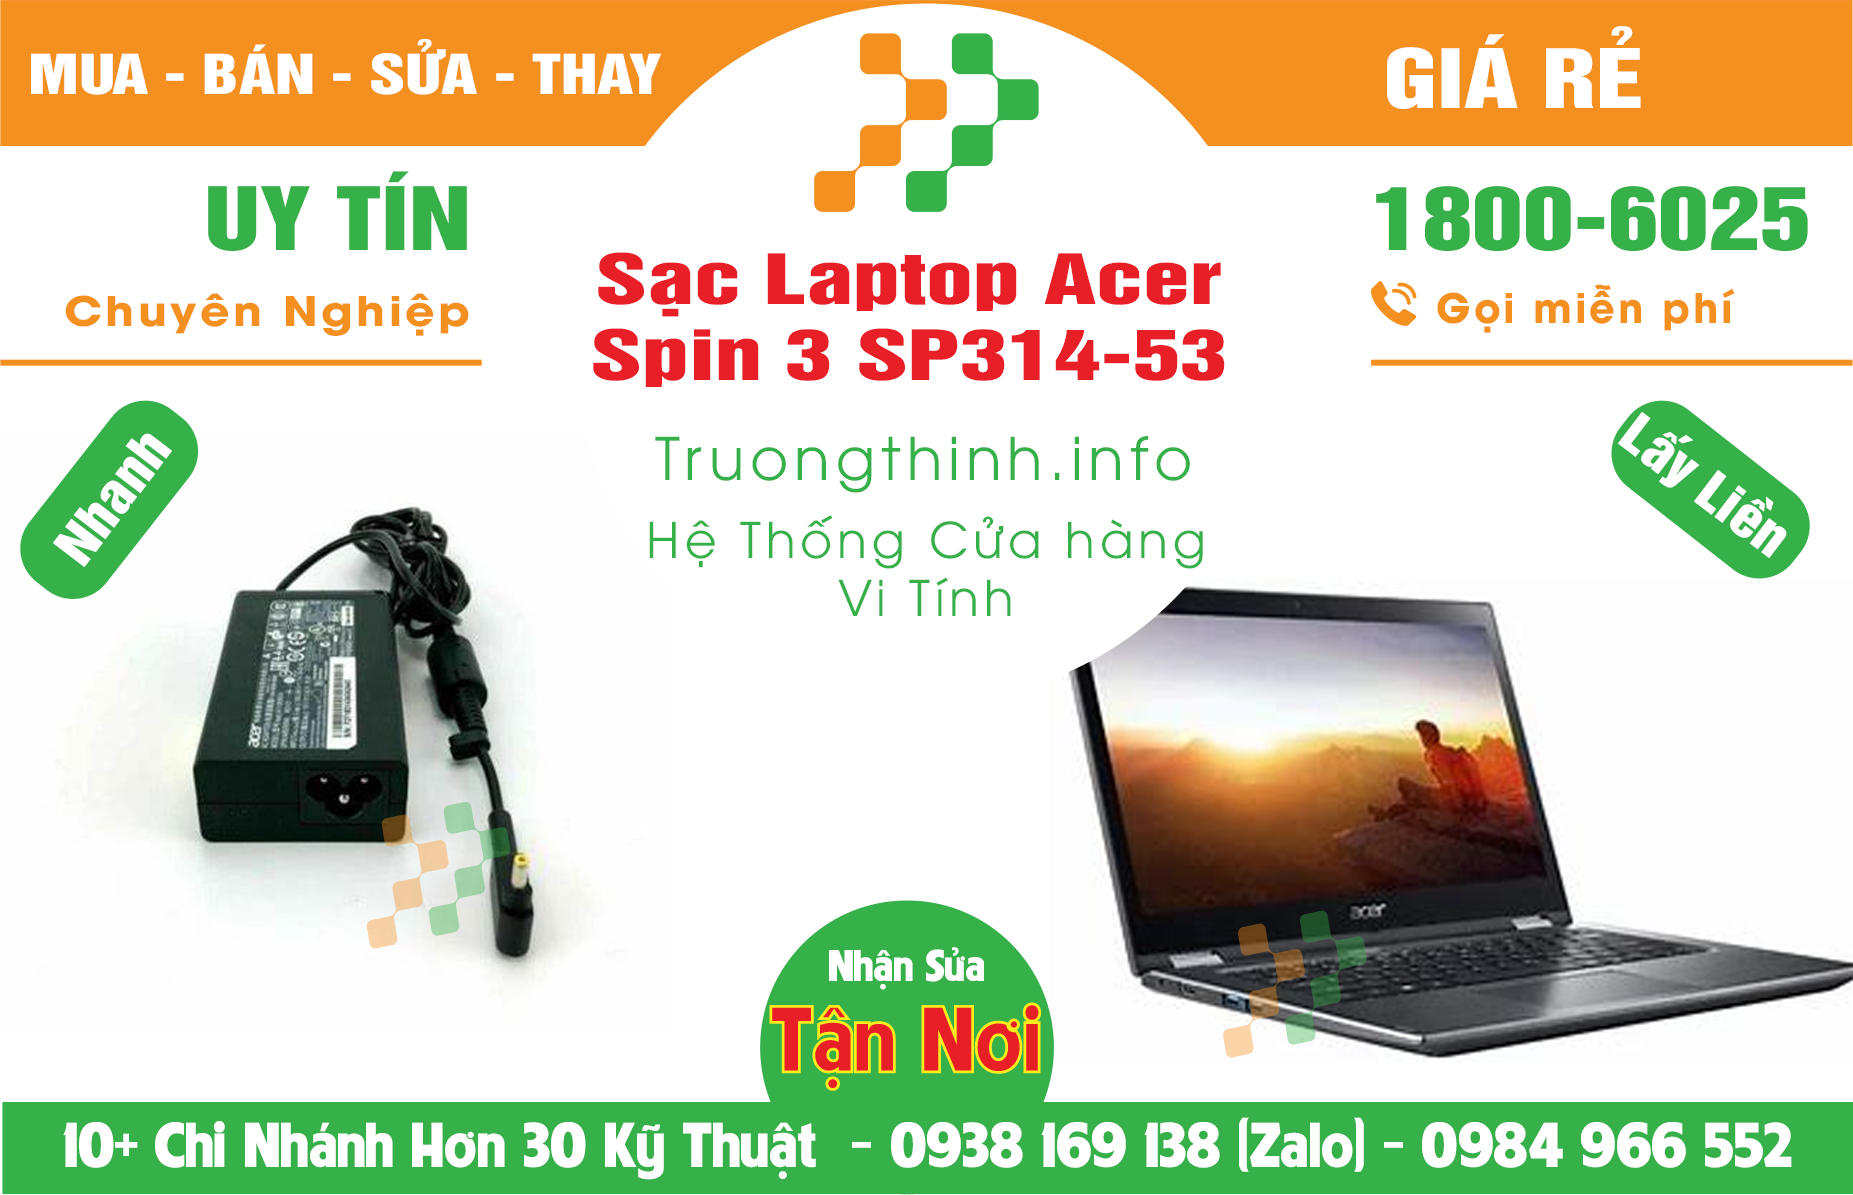 Mua Bán Sạc Laptop Acer Spin 3 SP314-53 Giá Rẻ | Máy Tính Trường Thịnh Giá Rẻ